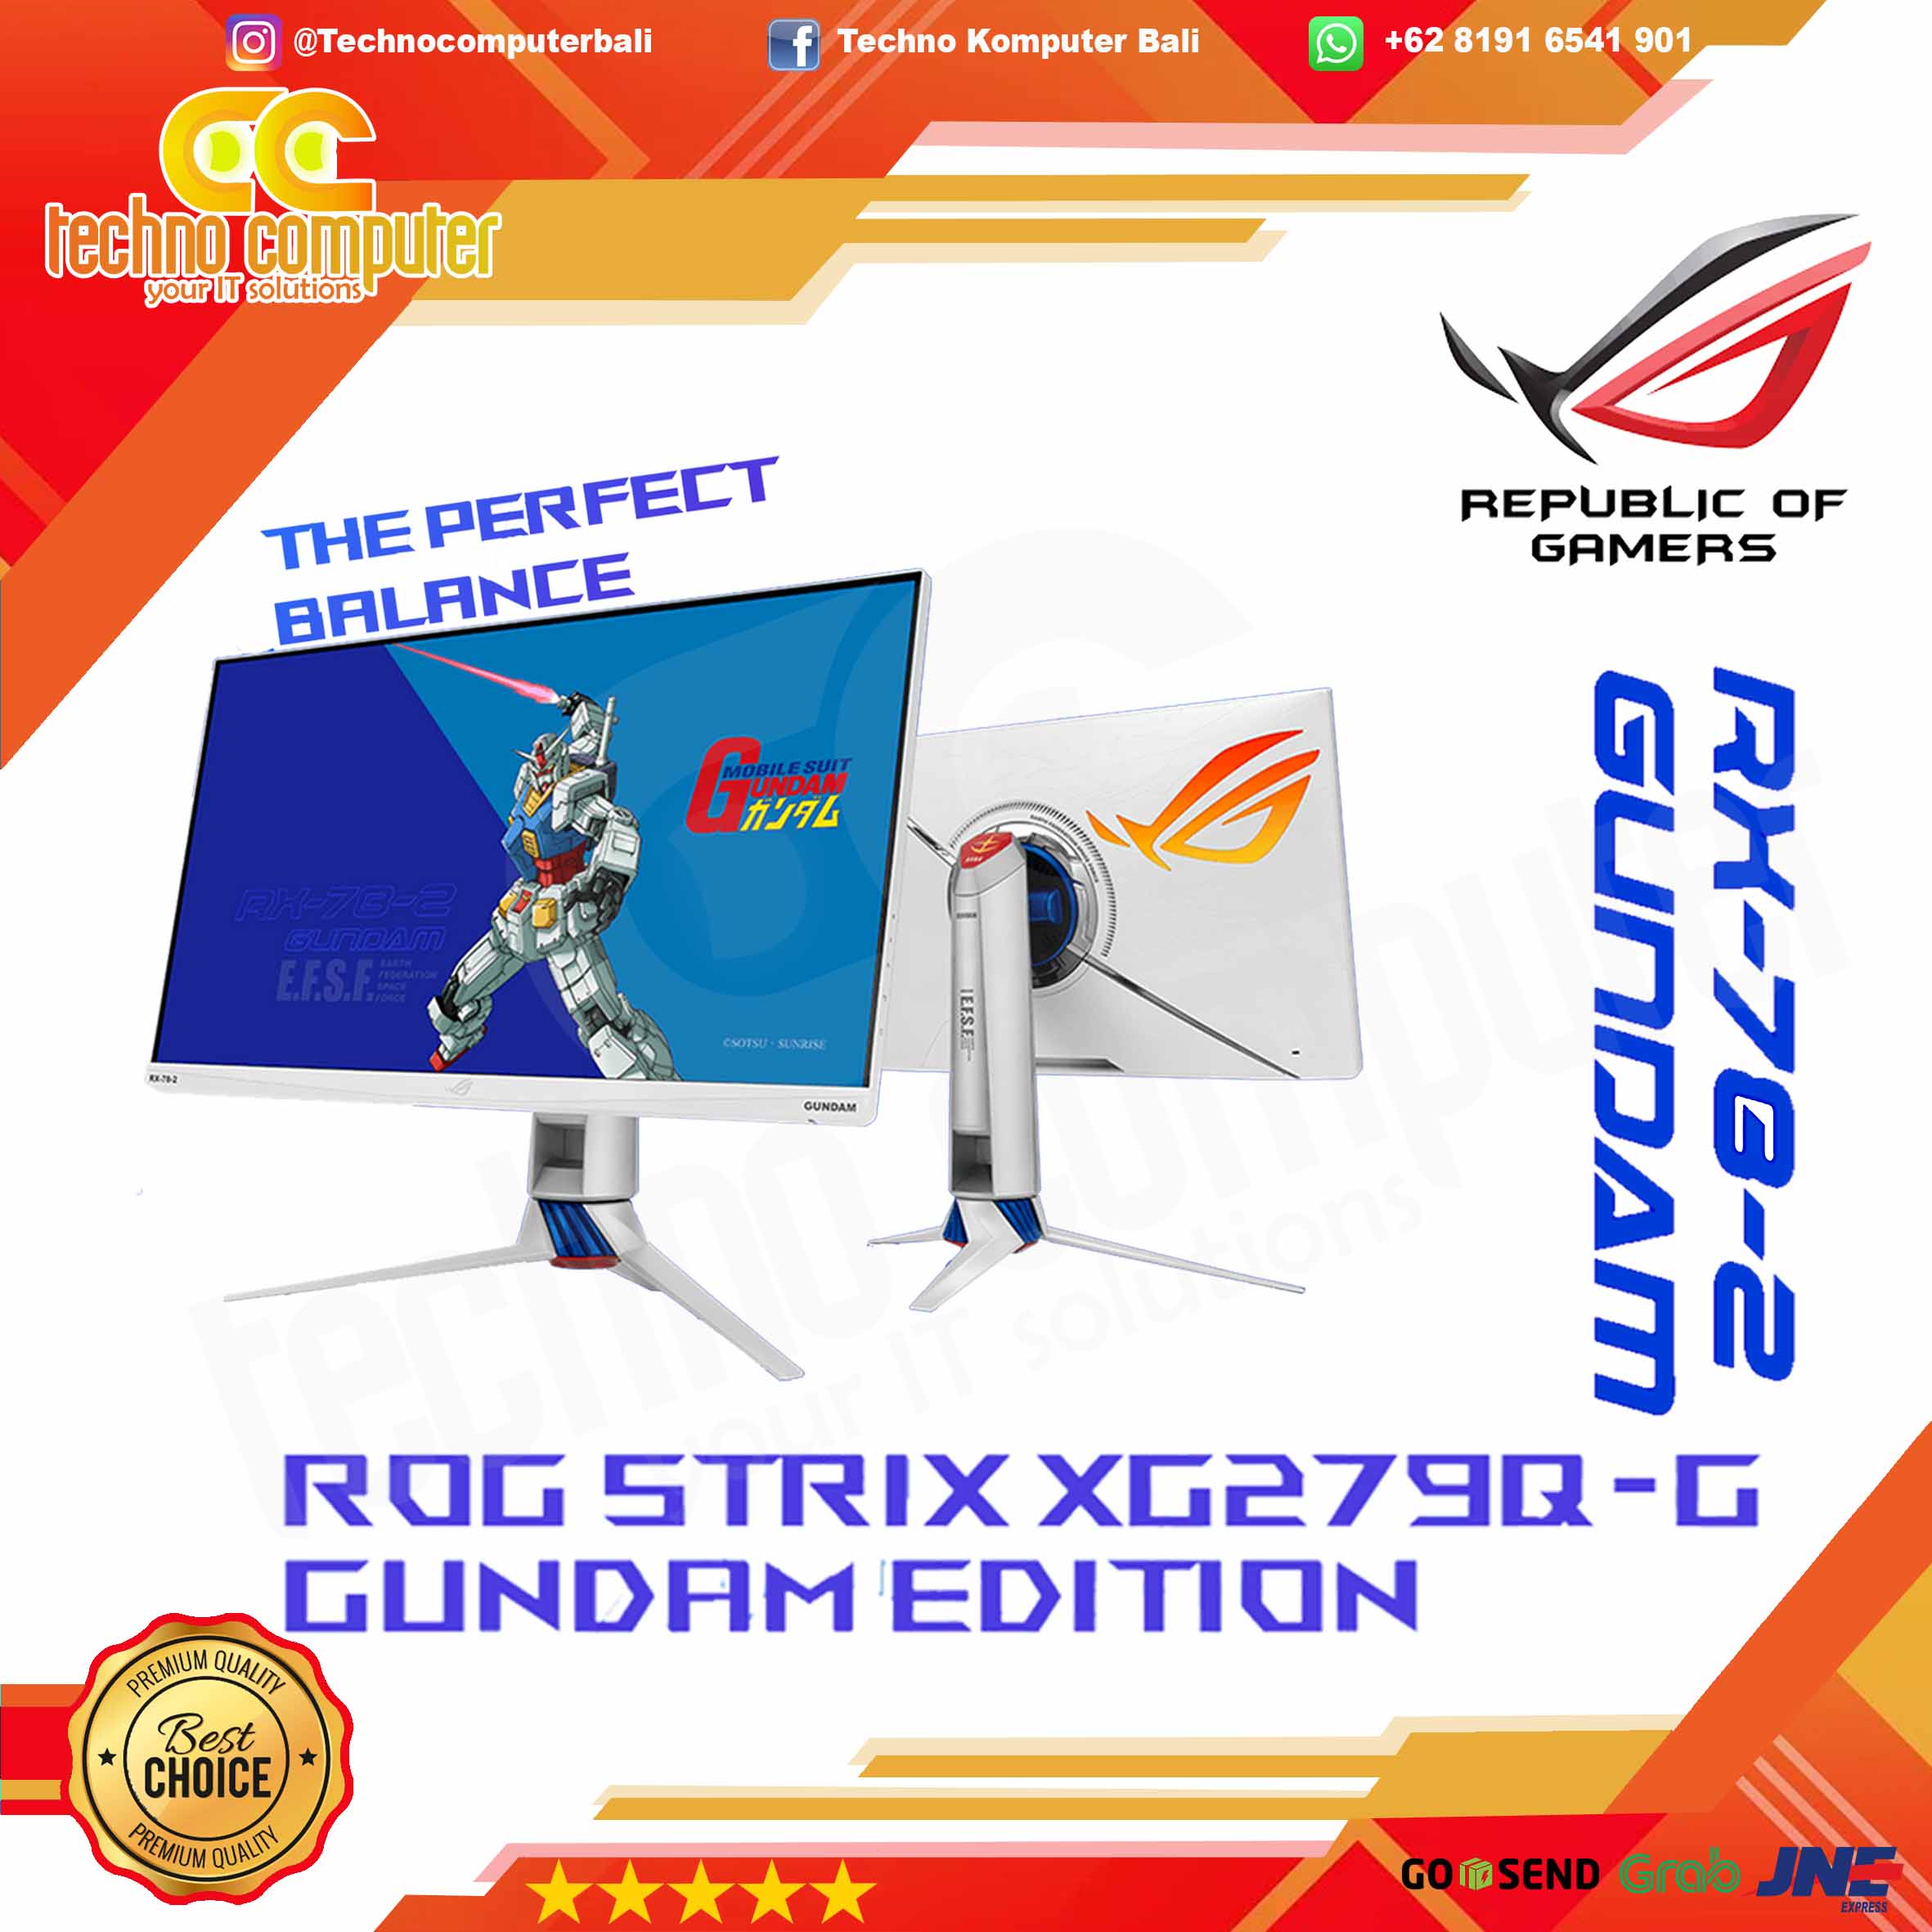 ASUS ROG STRIX XG279Q-G GUNDAM EDITION Gaming Monitor - 27 inch, WQHD (2560 x 1440), IPS, 170Hz, 1ms